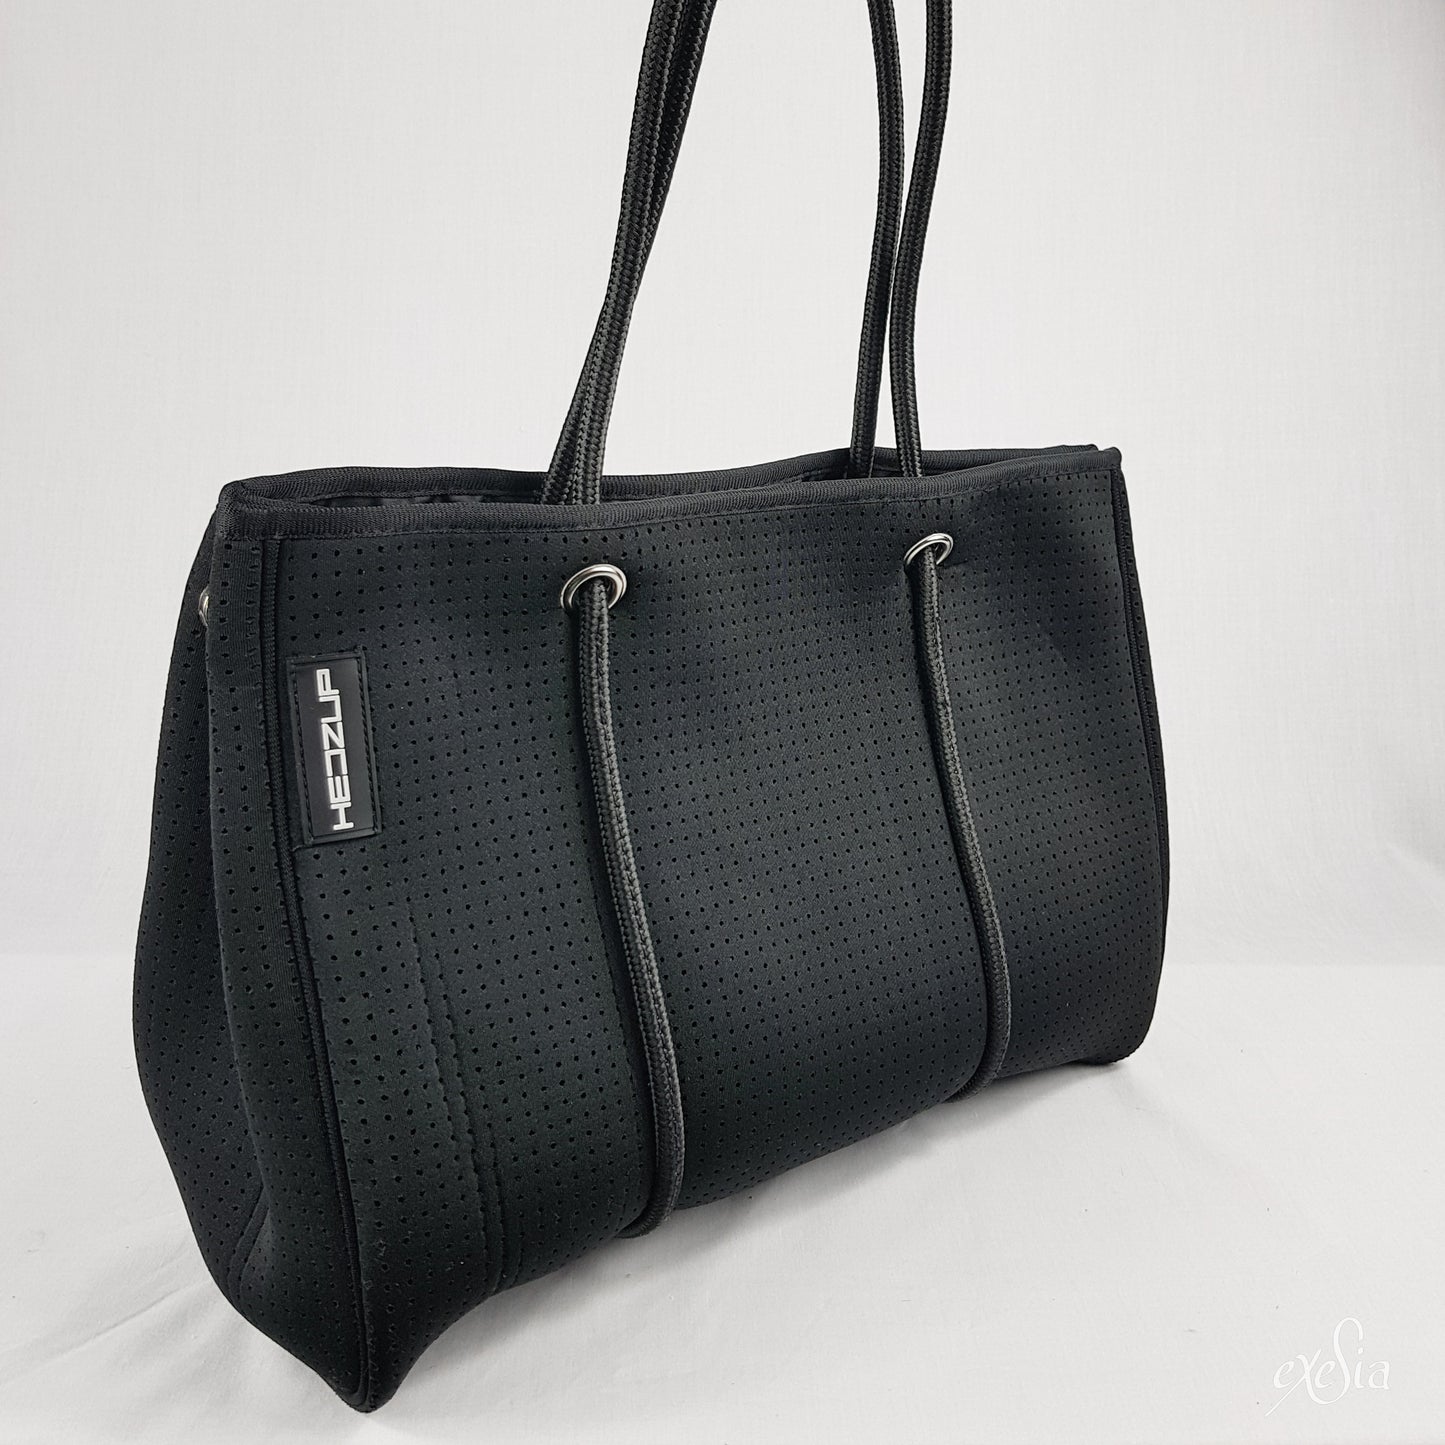 Medium Black Neoprene Tote Bag